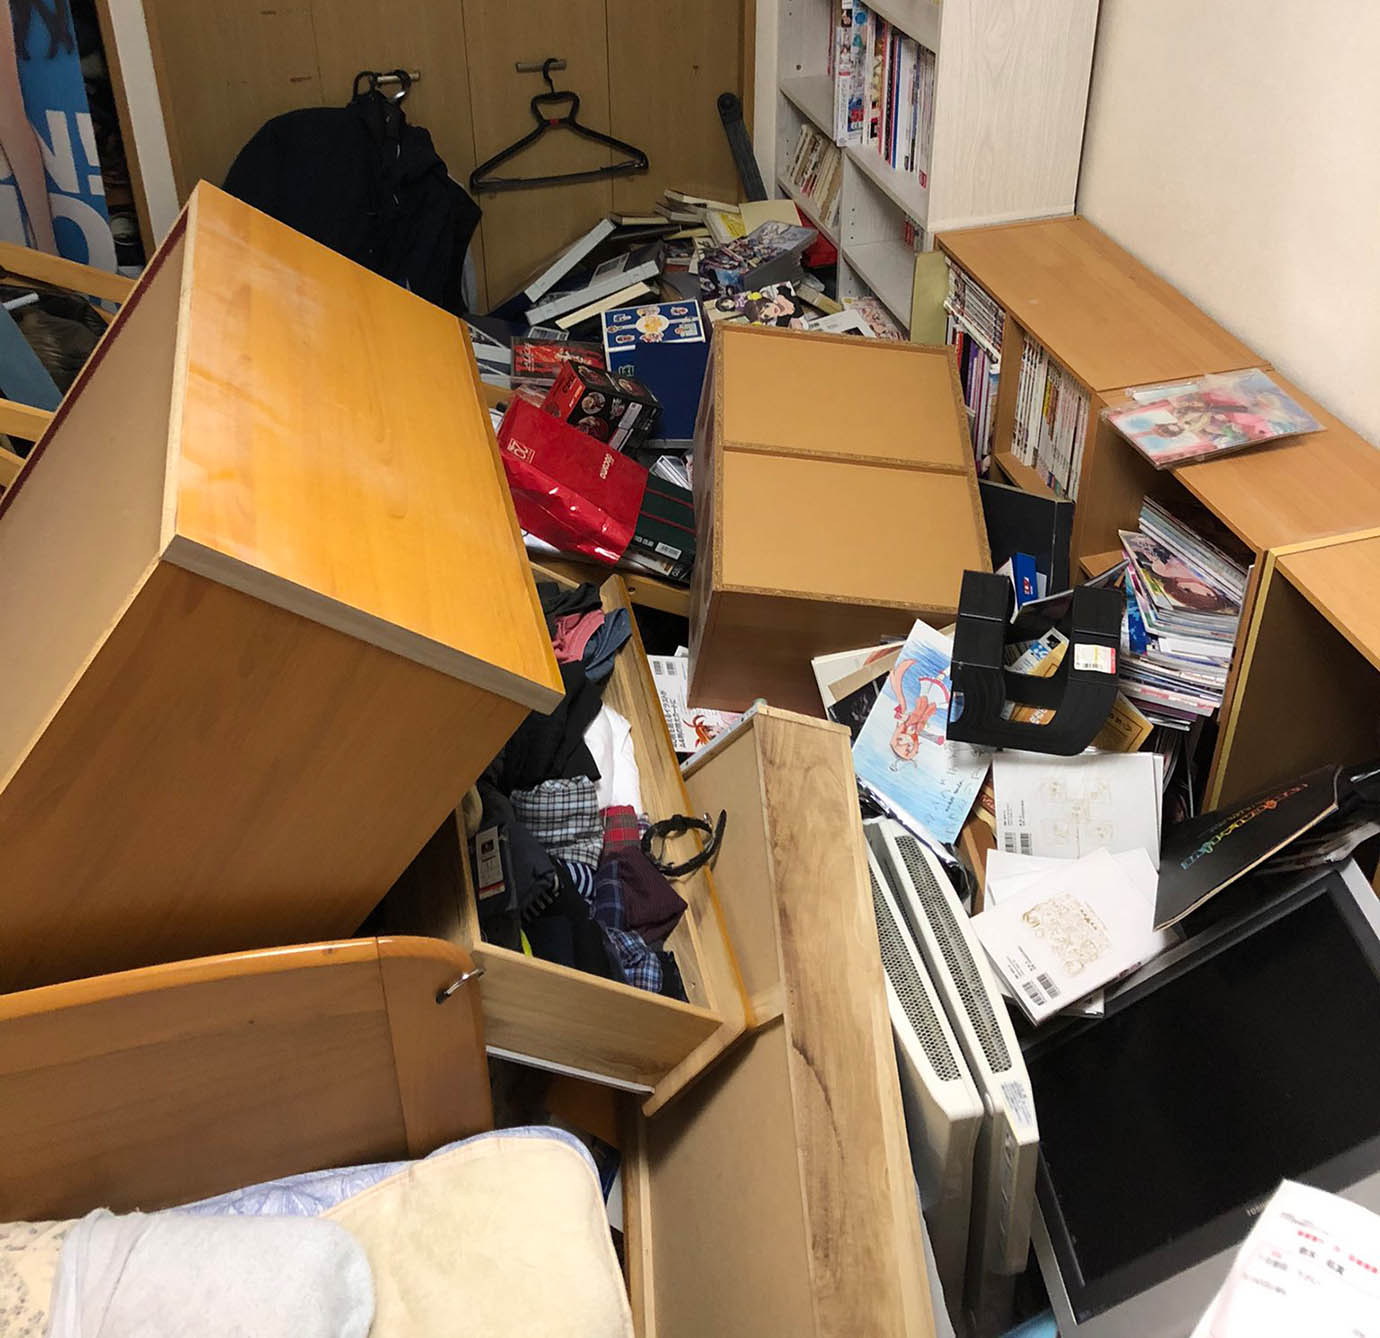 【緊急事態】地震で部屋から出られない人が苦悩 / めちゃくちゃになった部屋の写真を投稿